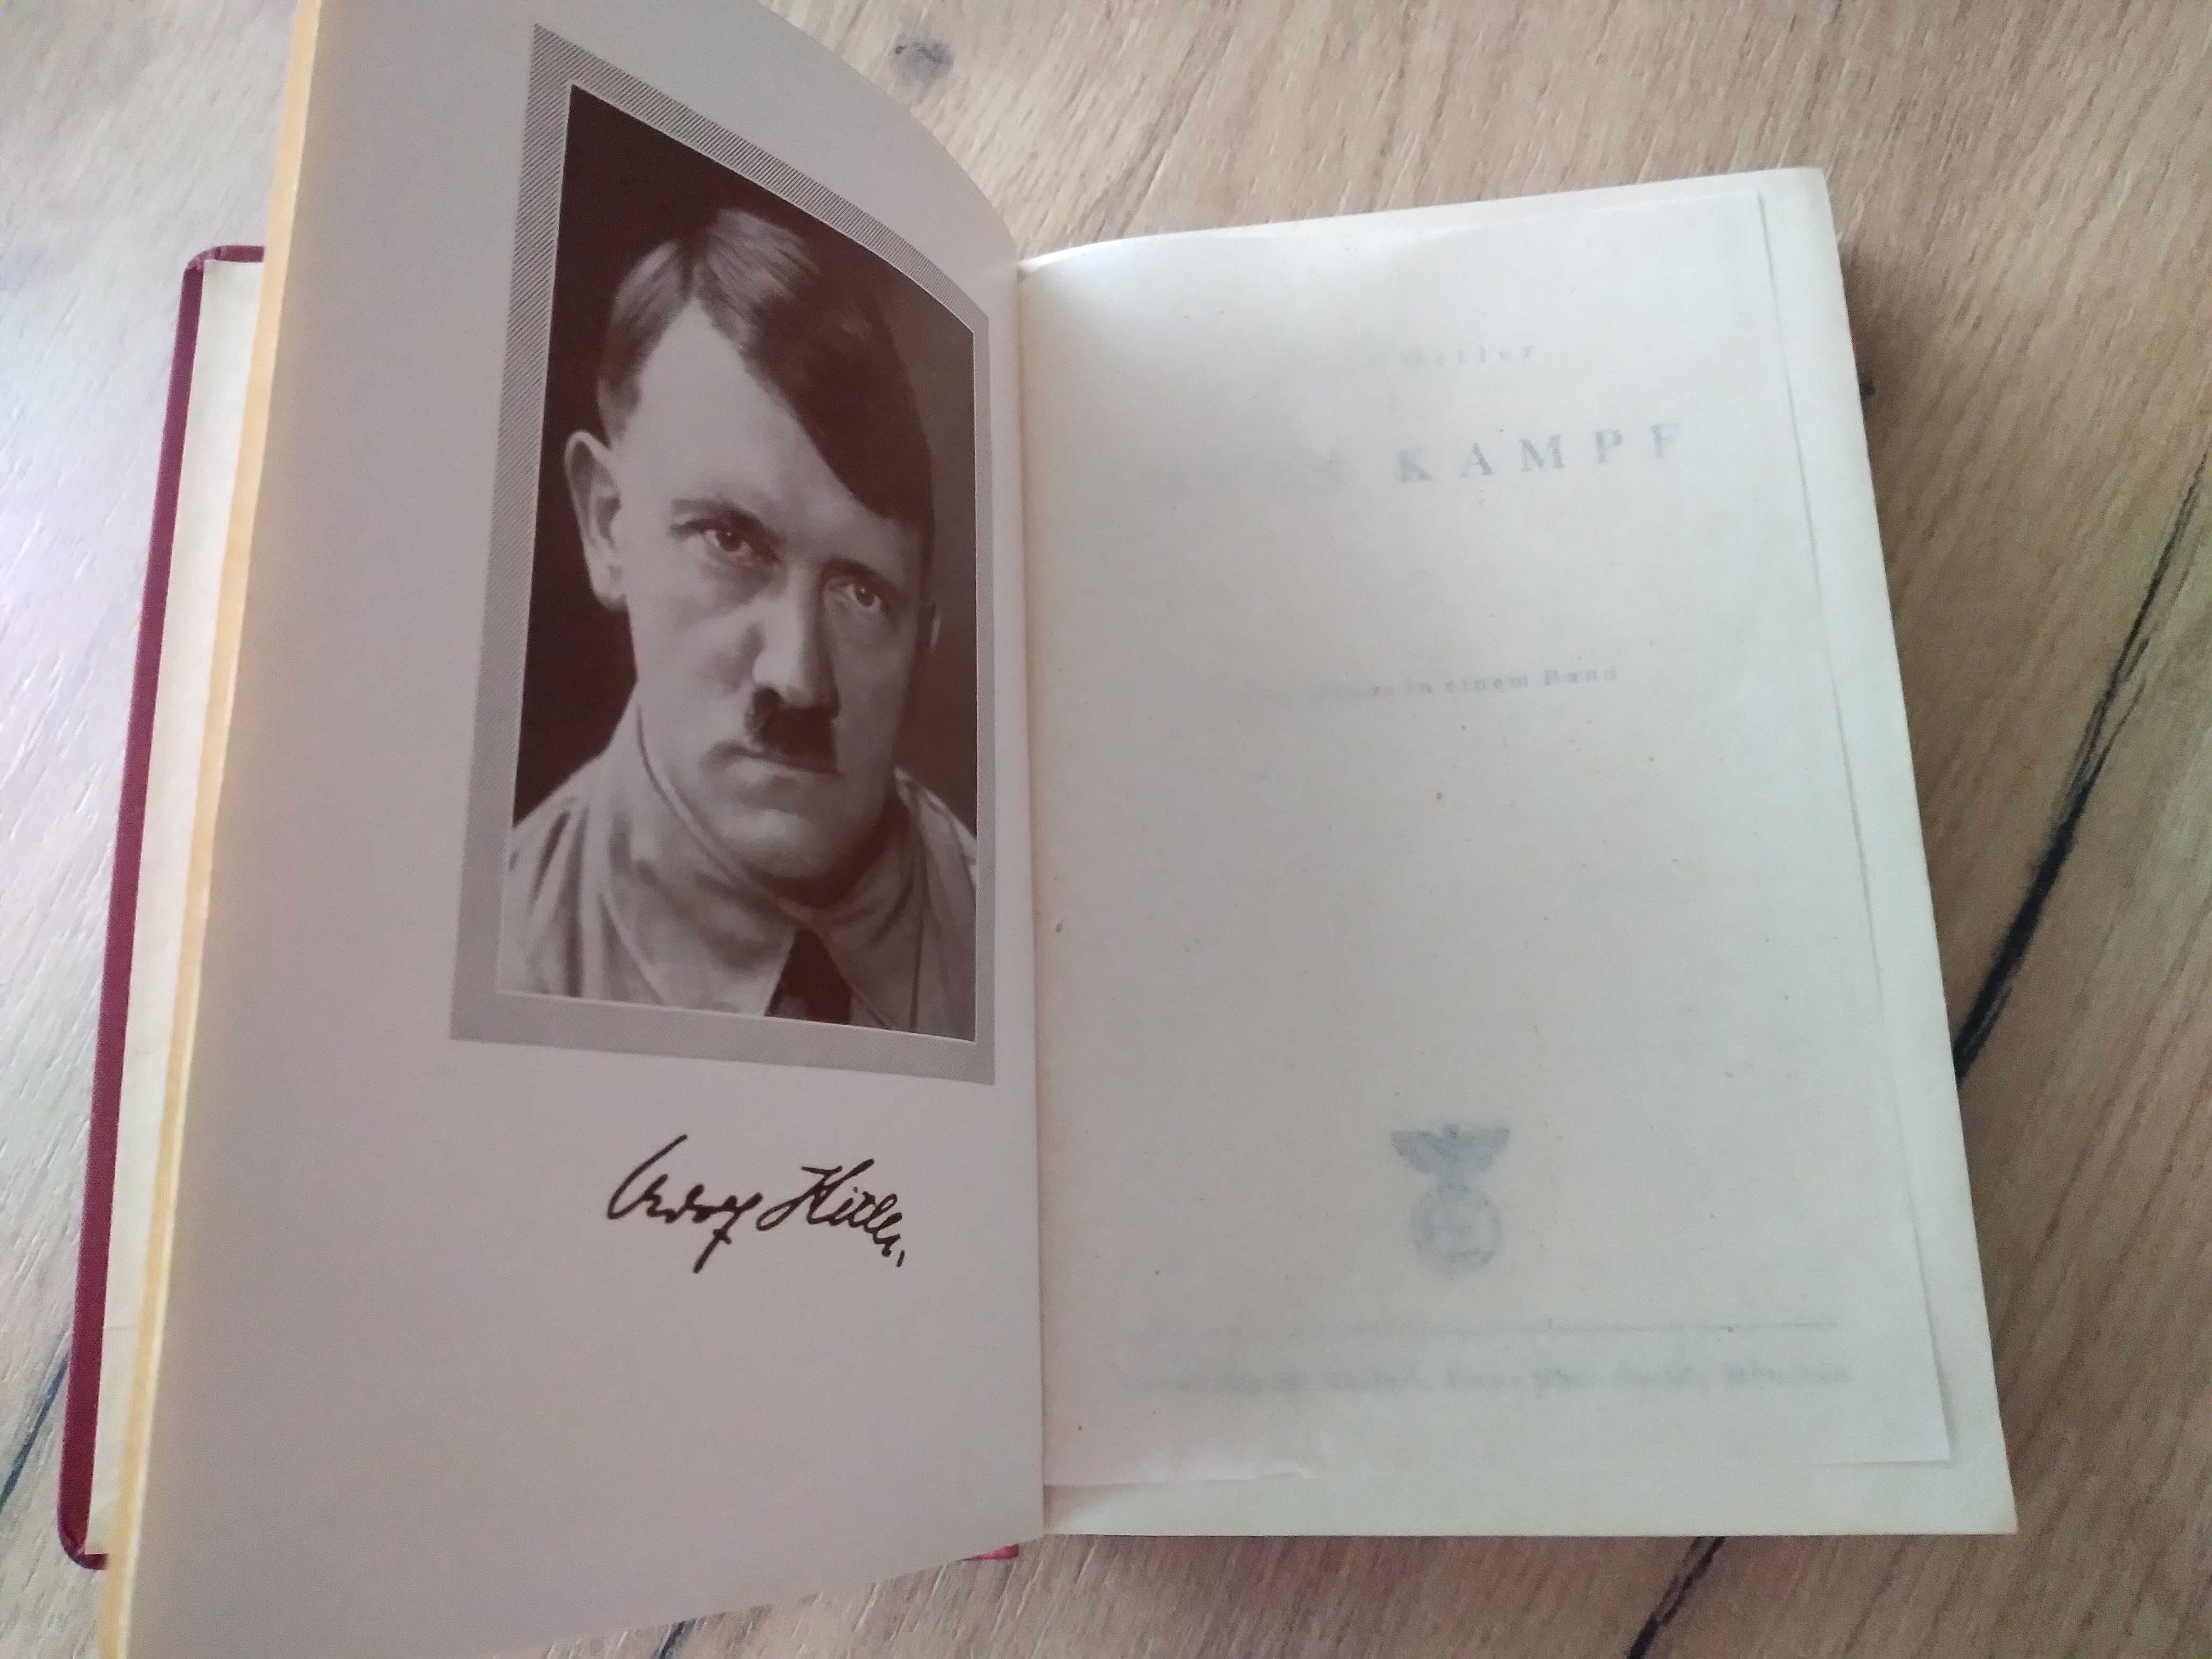 Mein kampf, wydanie niemieckie 1942 rok